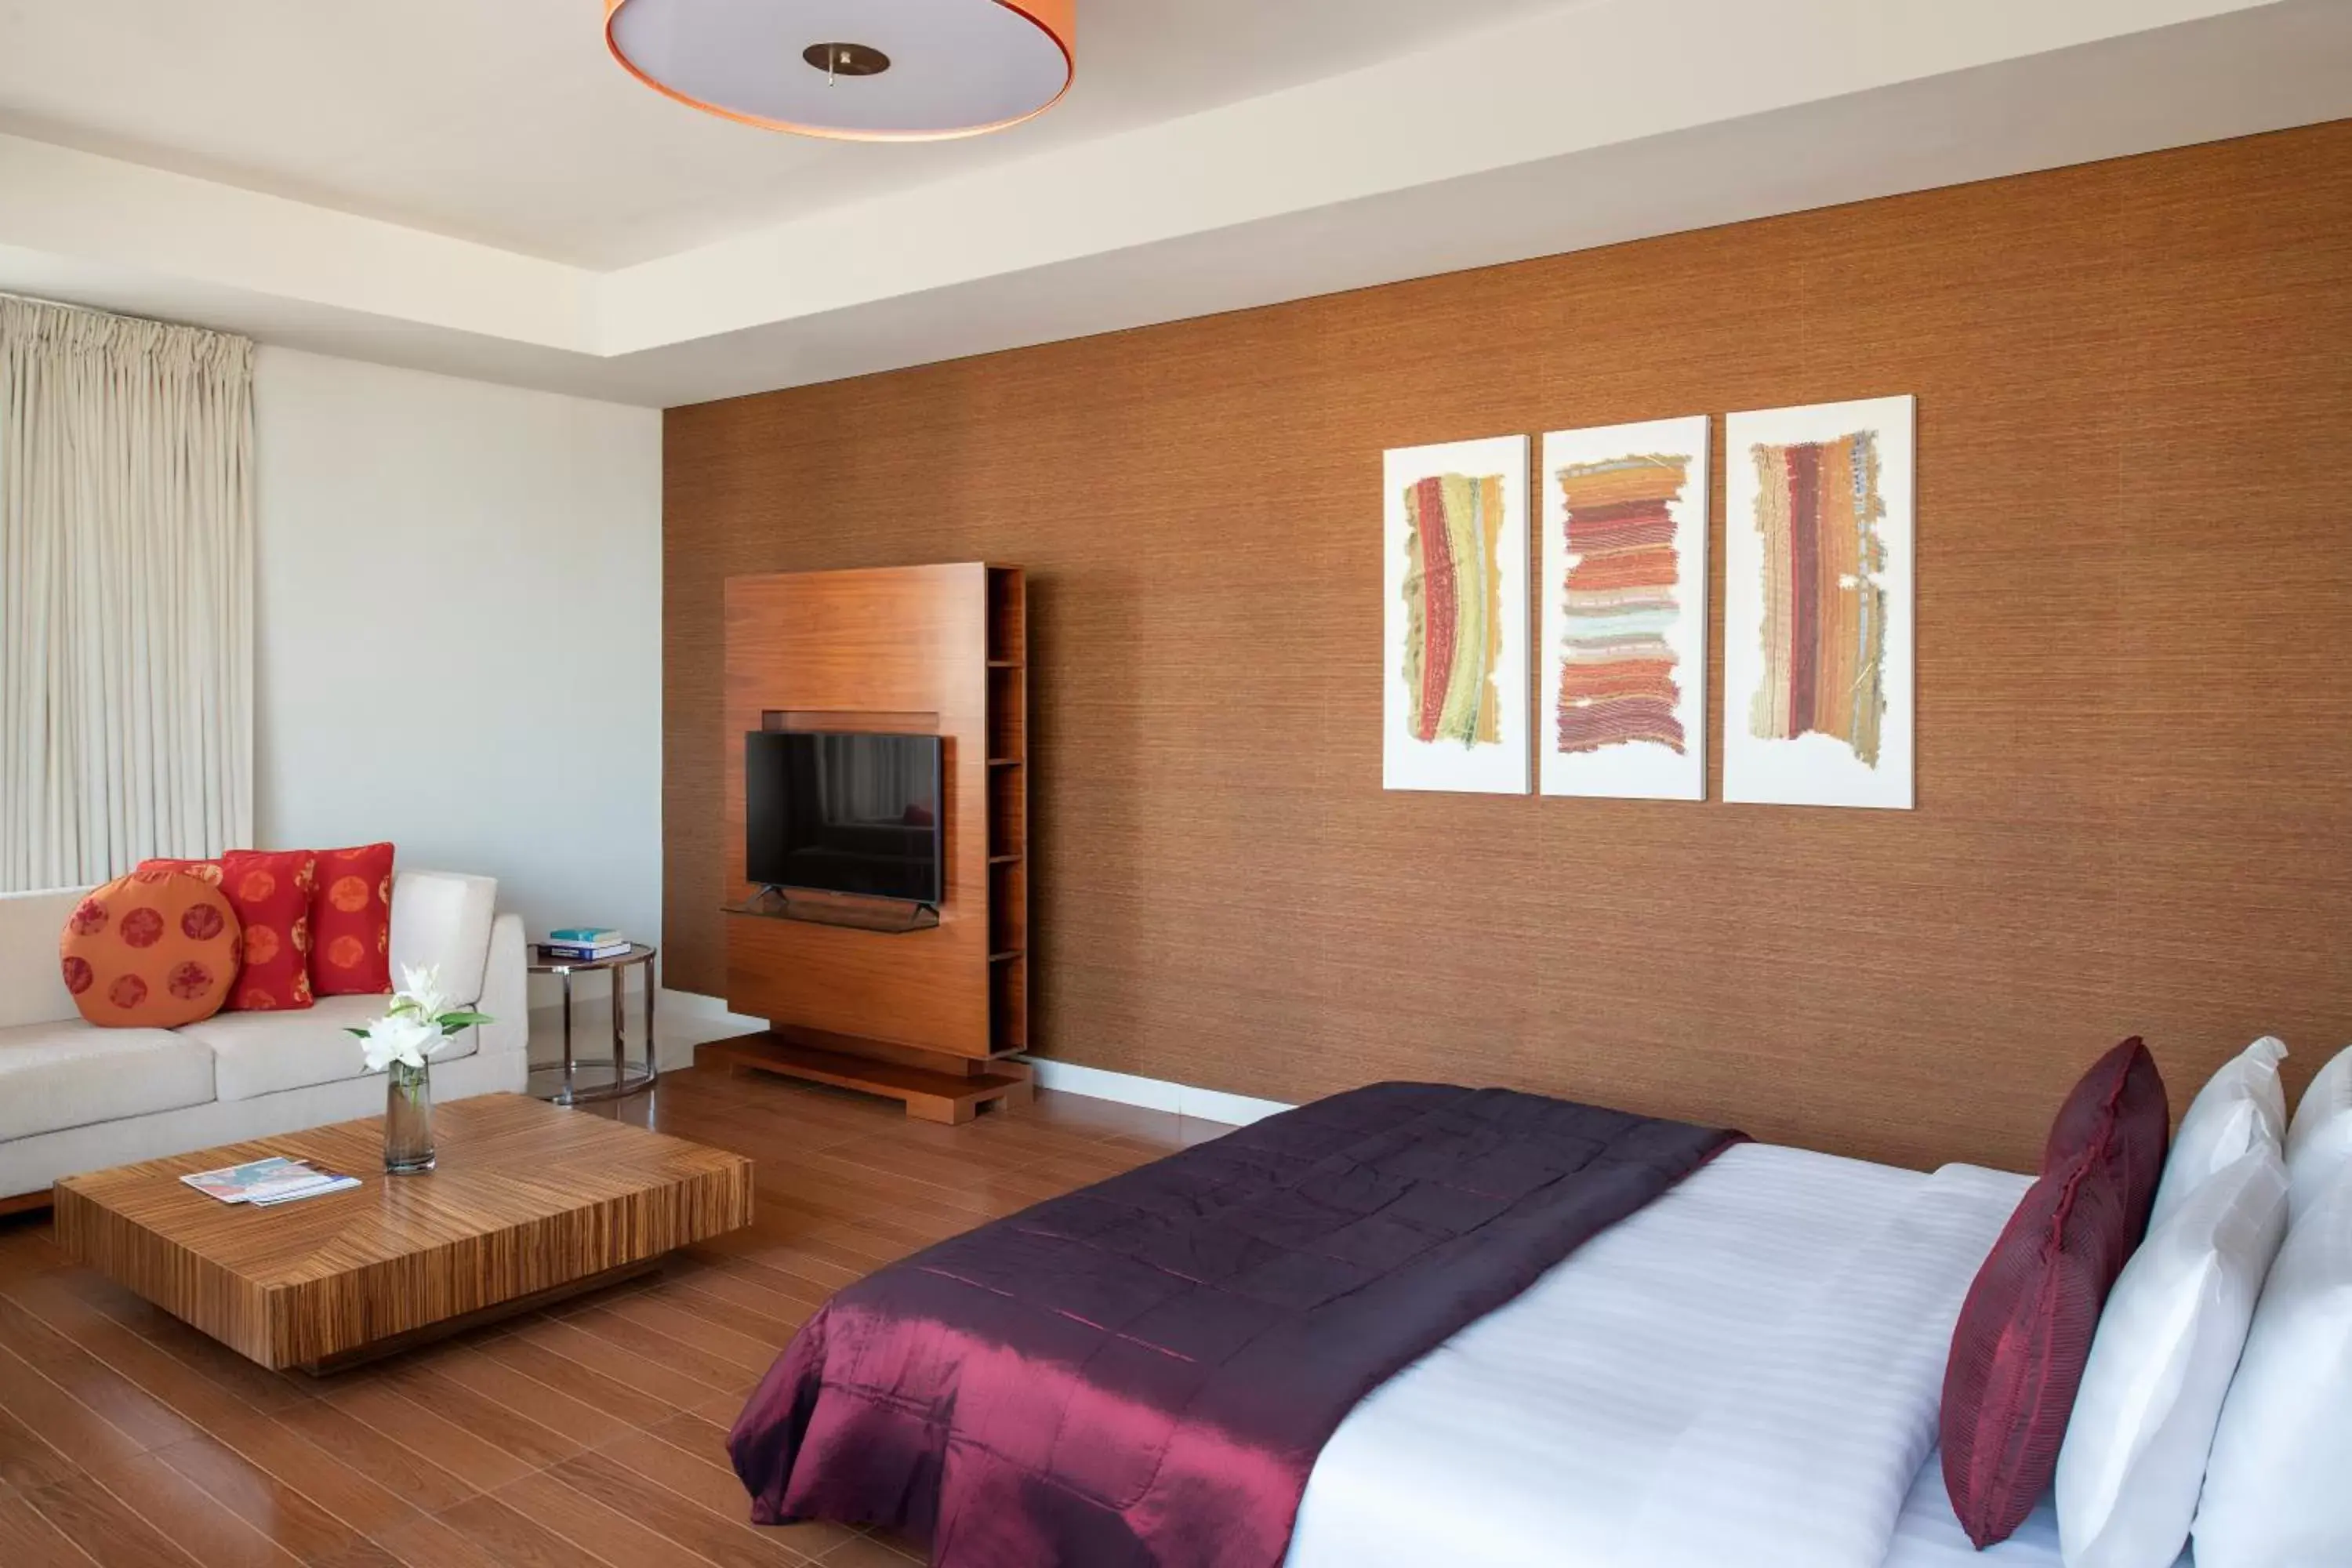 Bedroom in Fraser Suites Doha